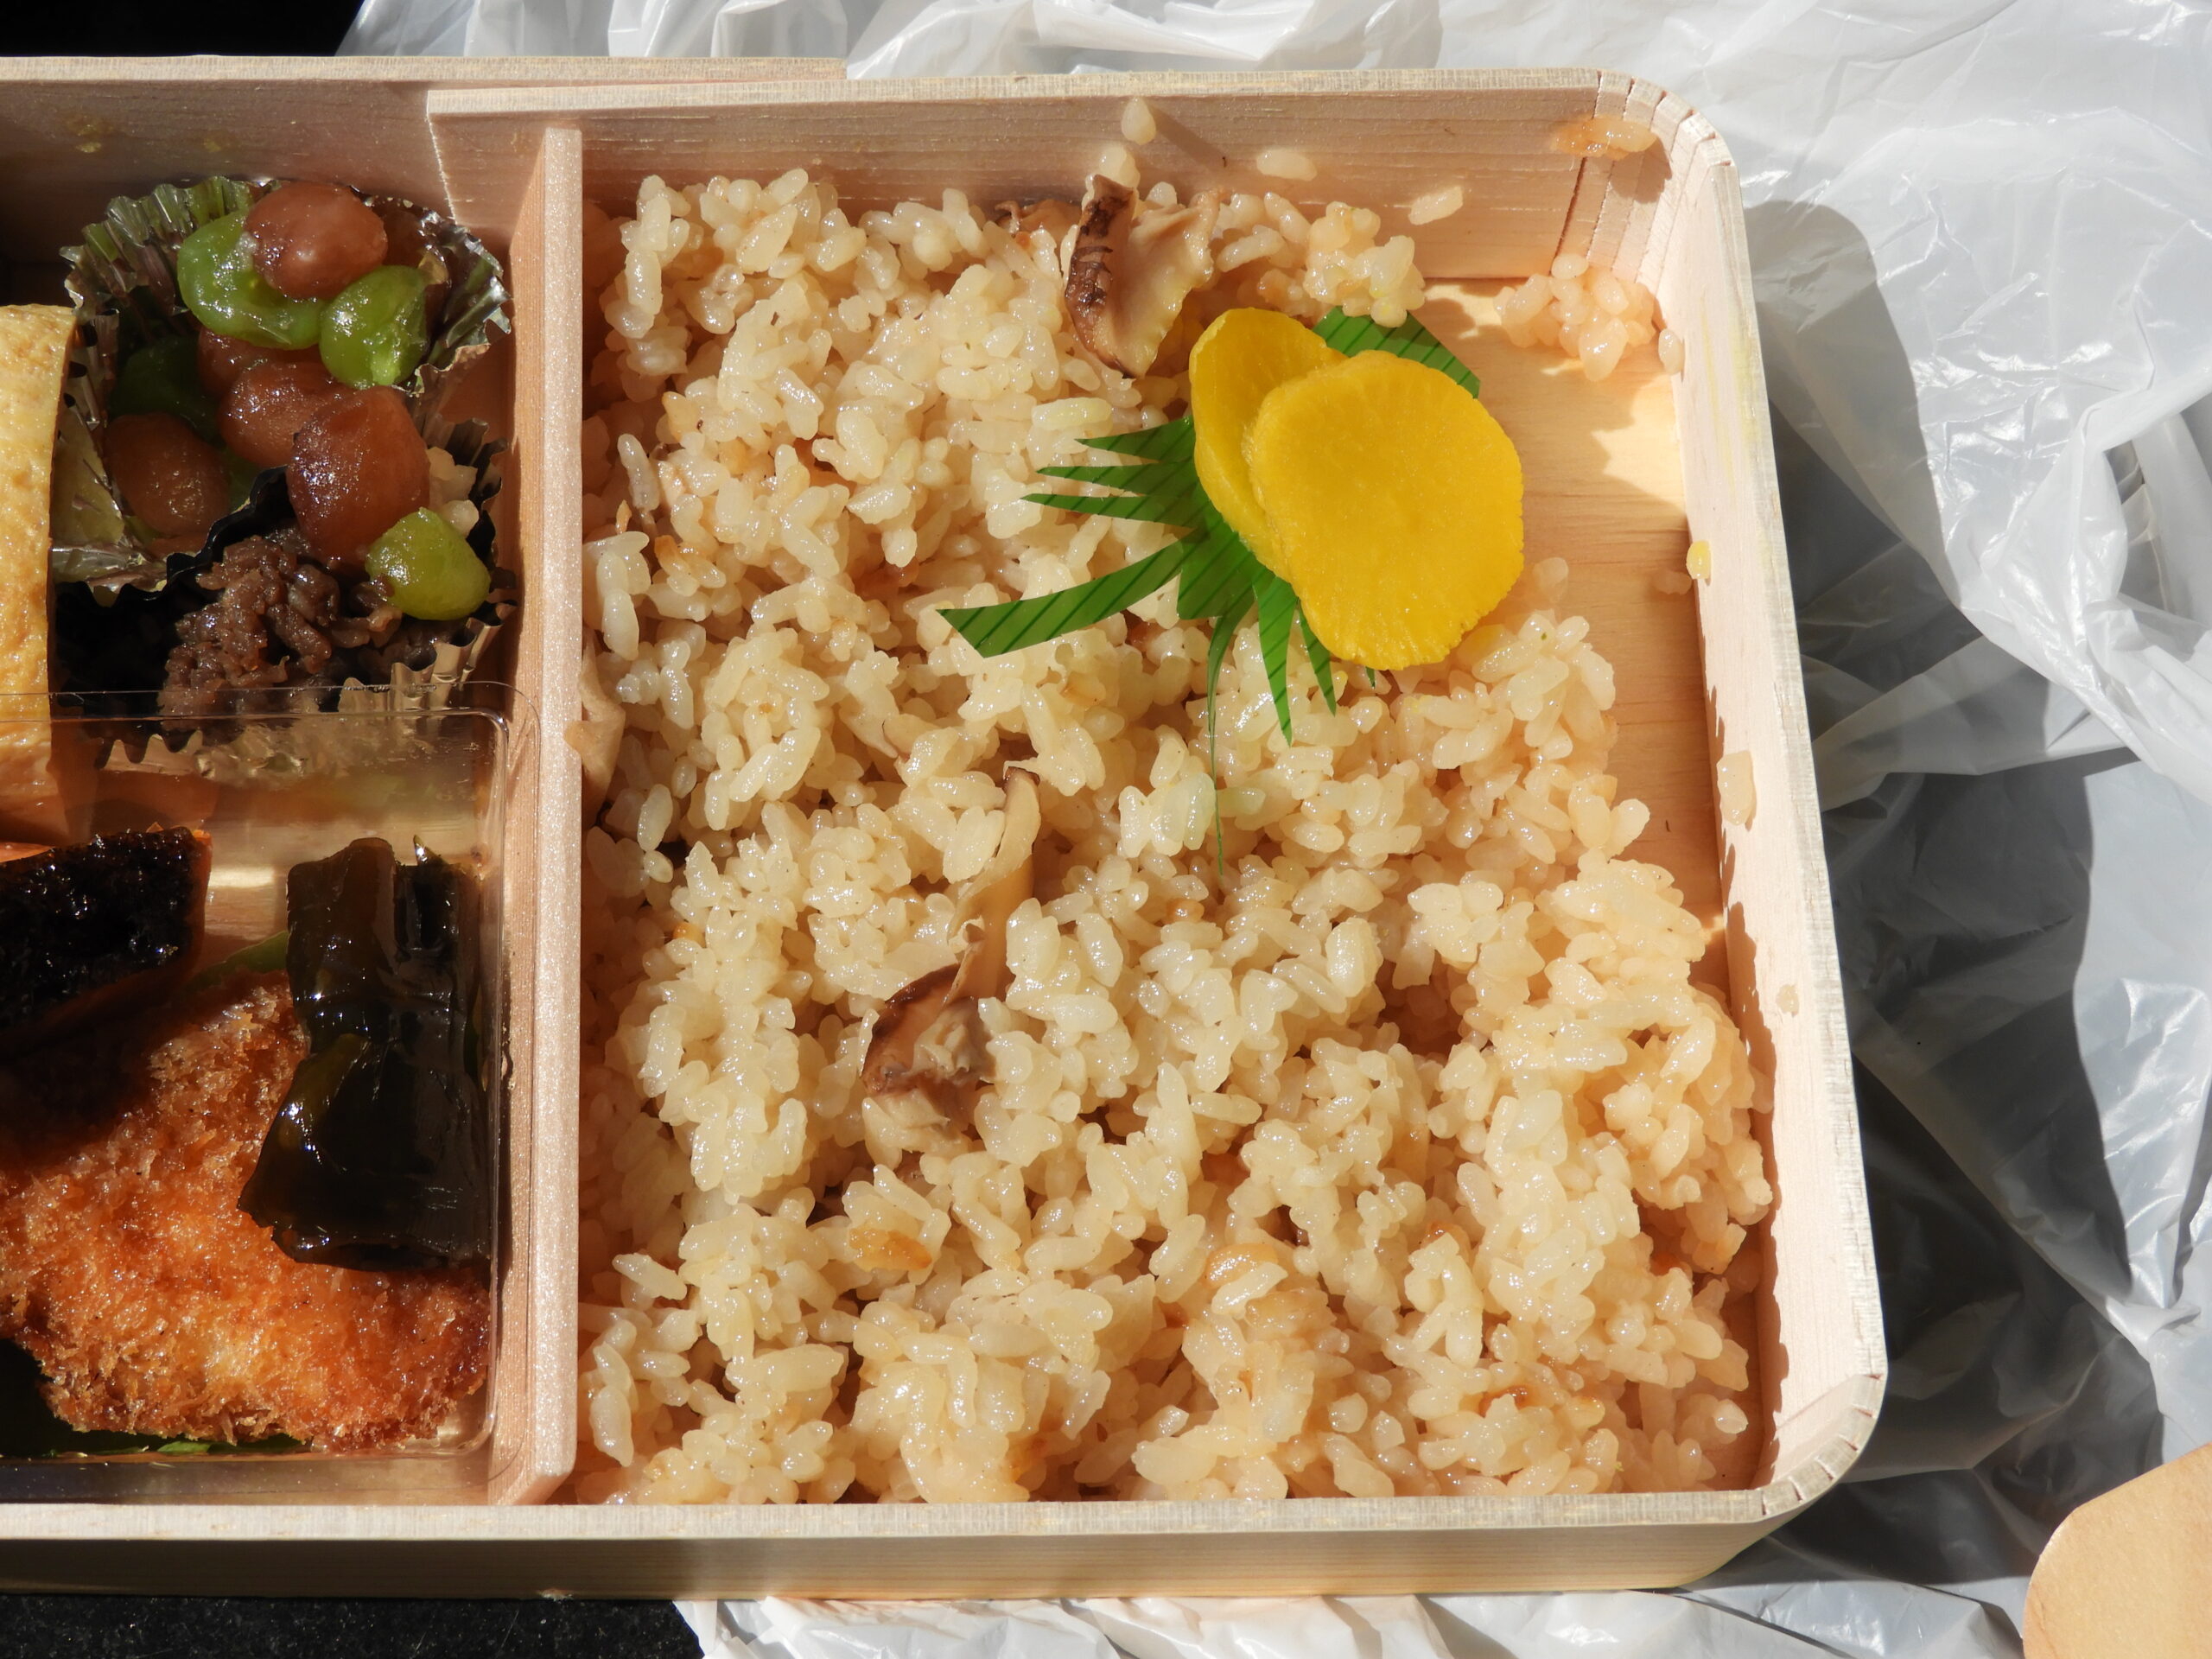 【アイモバリアルグルメツアー】日本最高級の丹波松茸を使用した松茸ごはんを求めて・・・